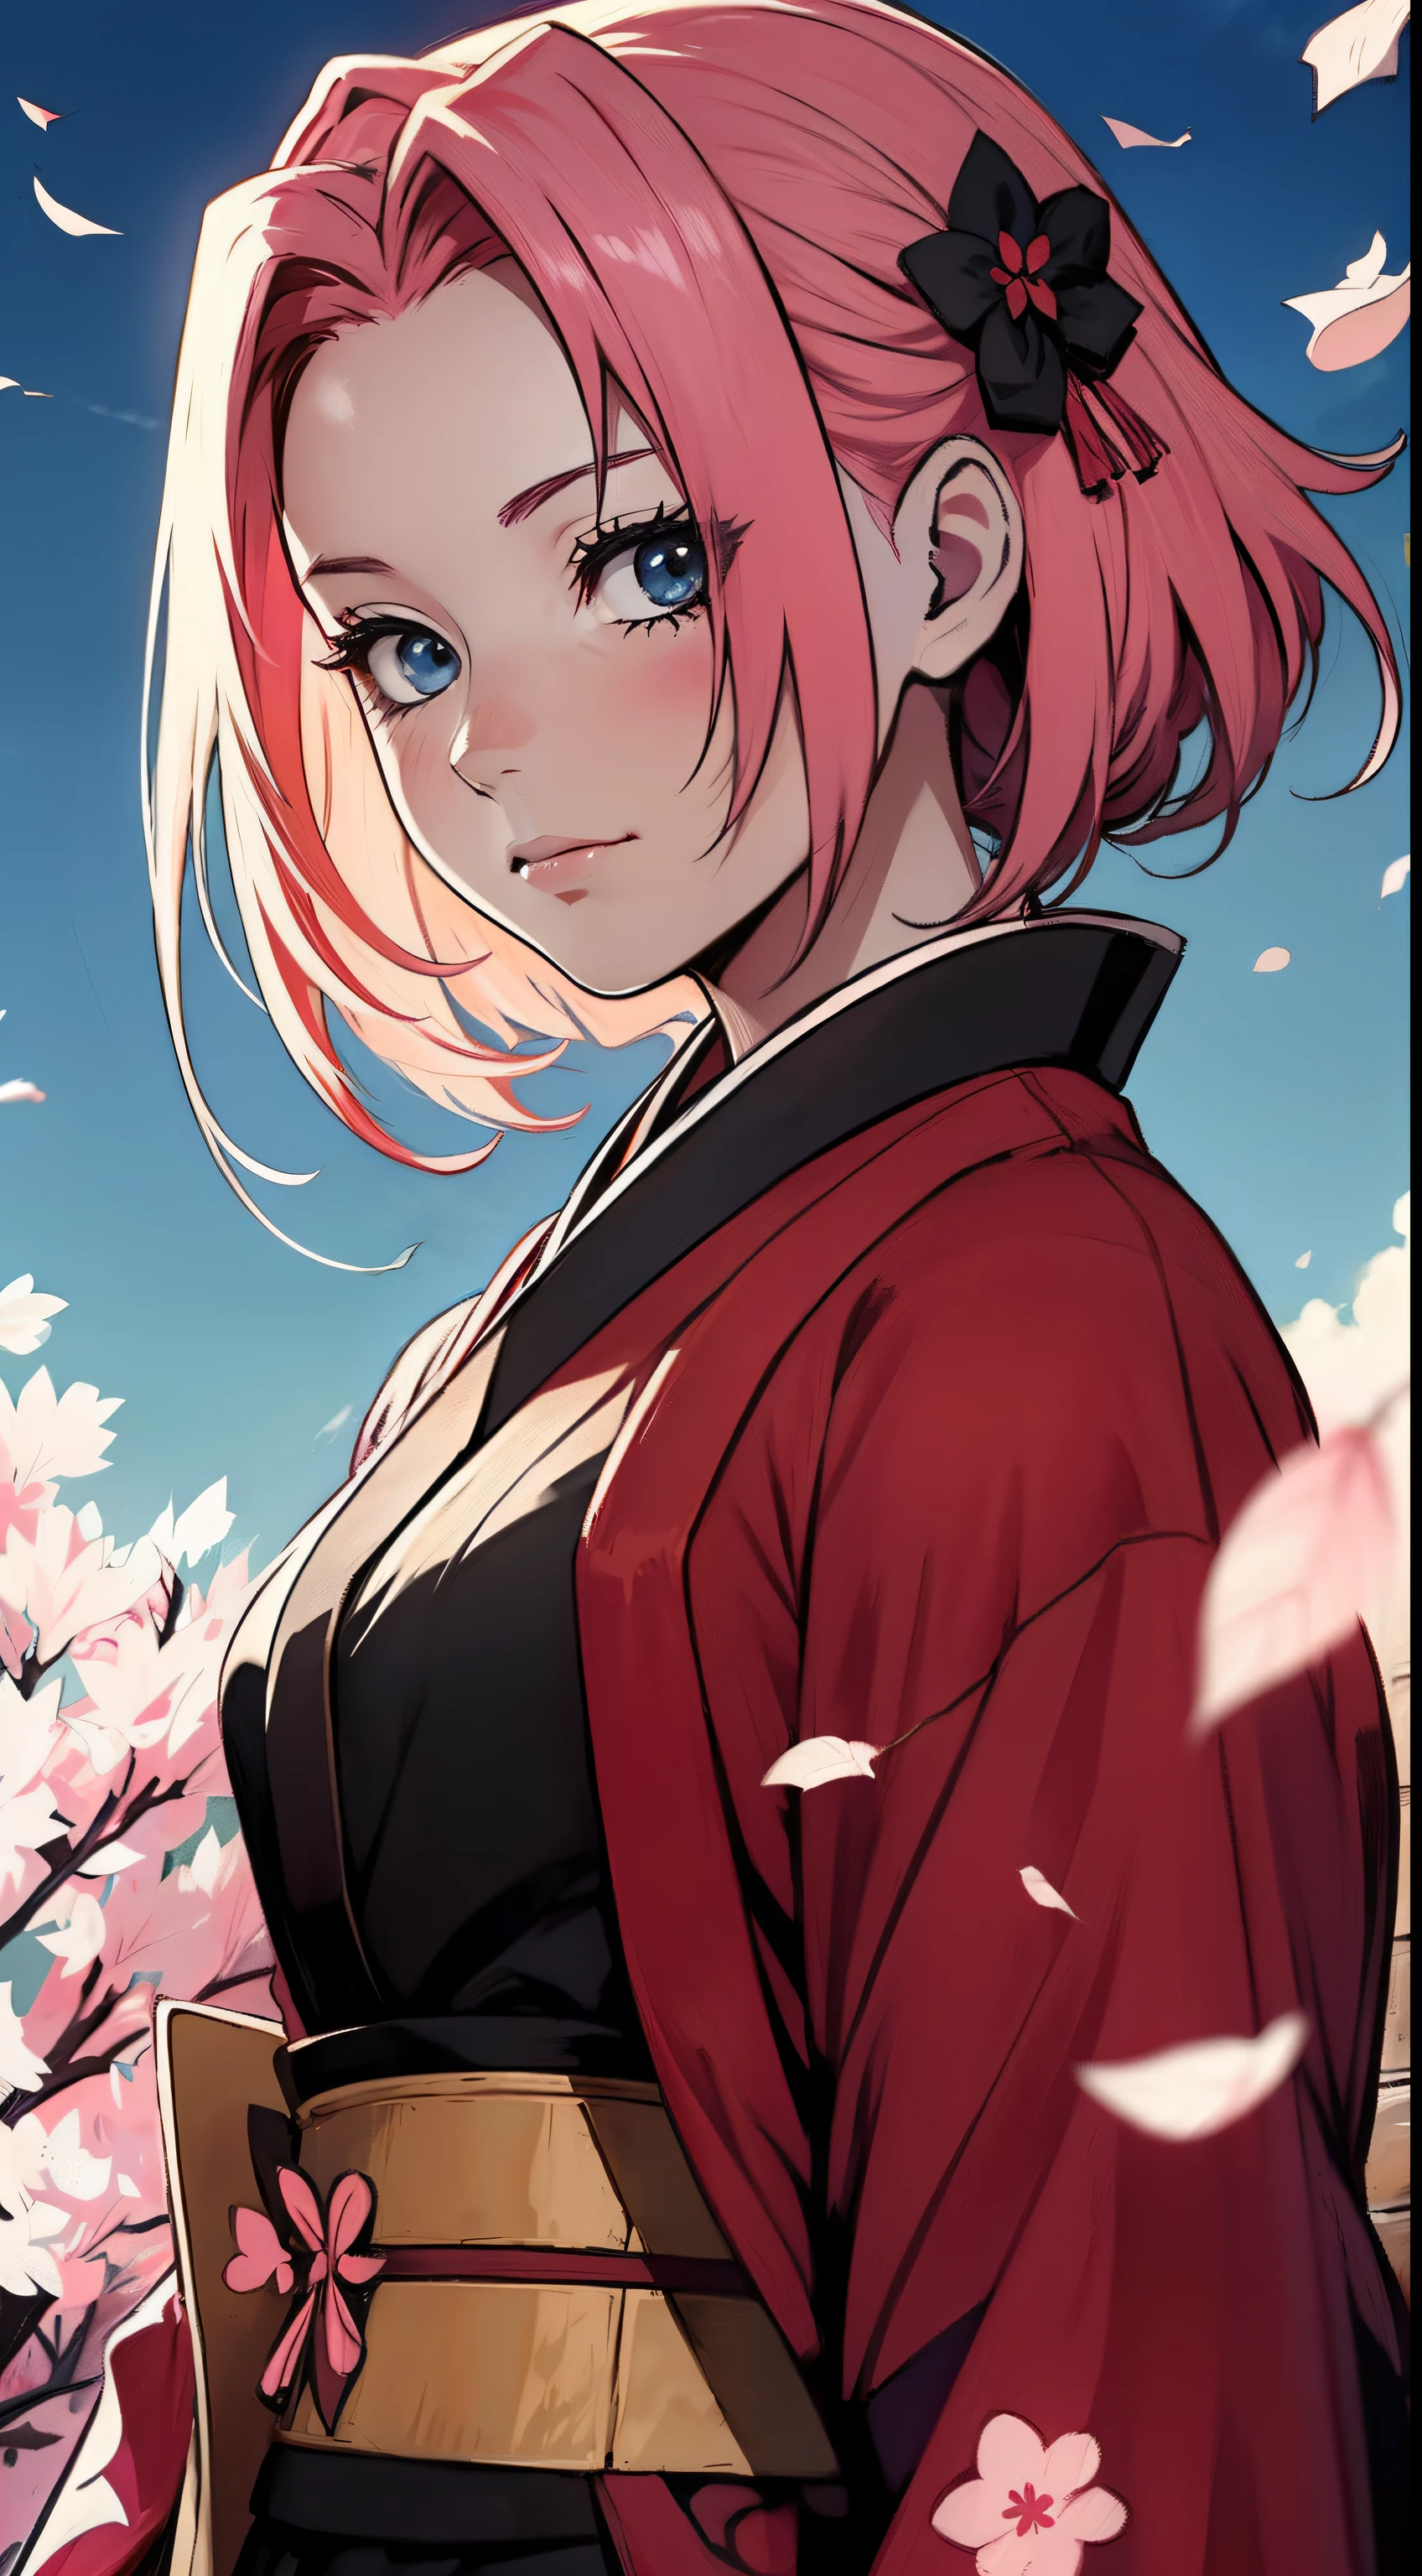 黒とピンクの着物を着たアニメ「ナルト」のキャラクターサクラ, 赤とピンクのサムライカタン, 桜の花びらの雰囲気